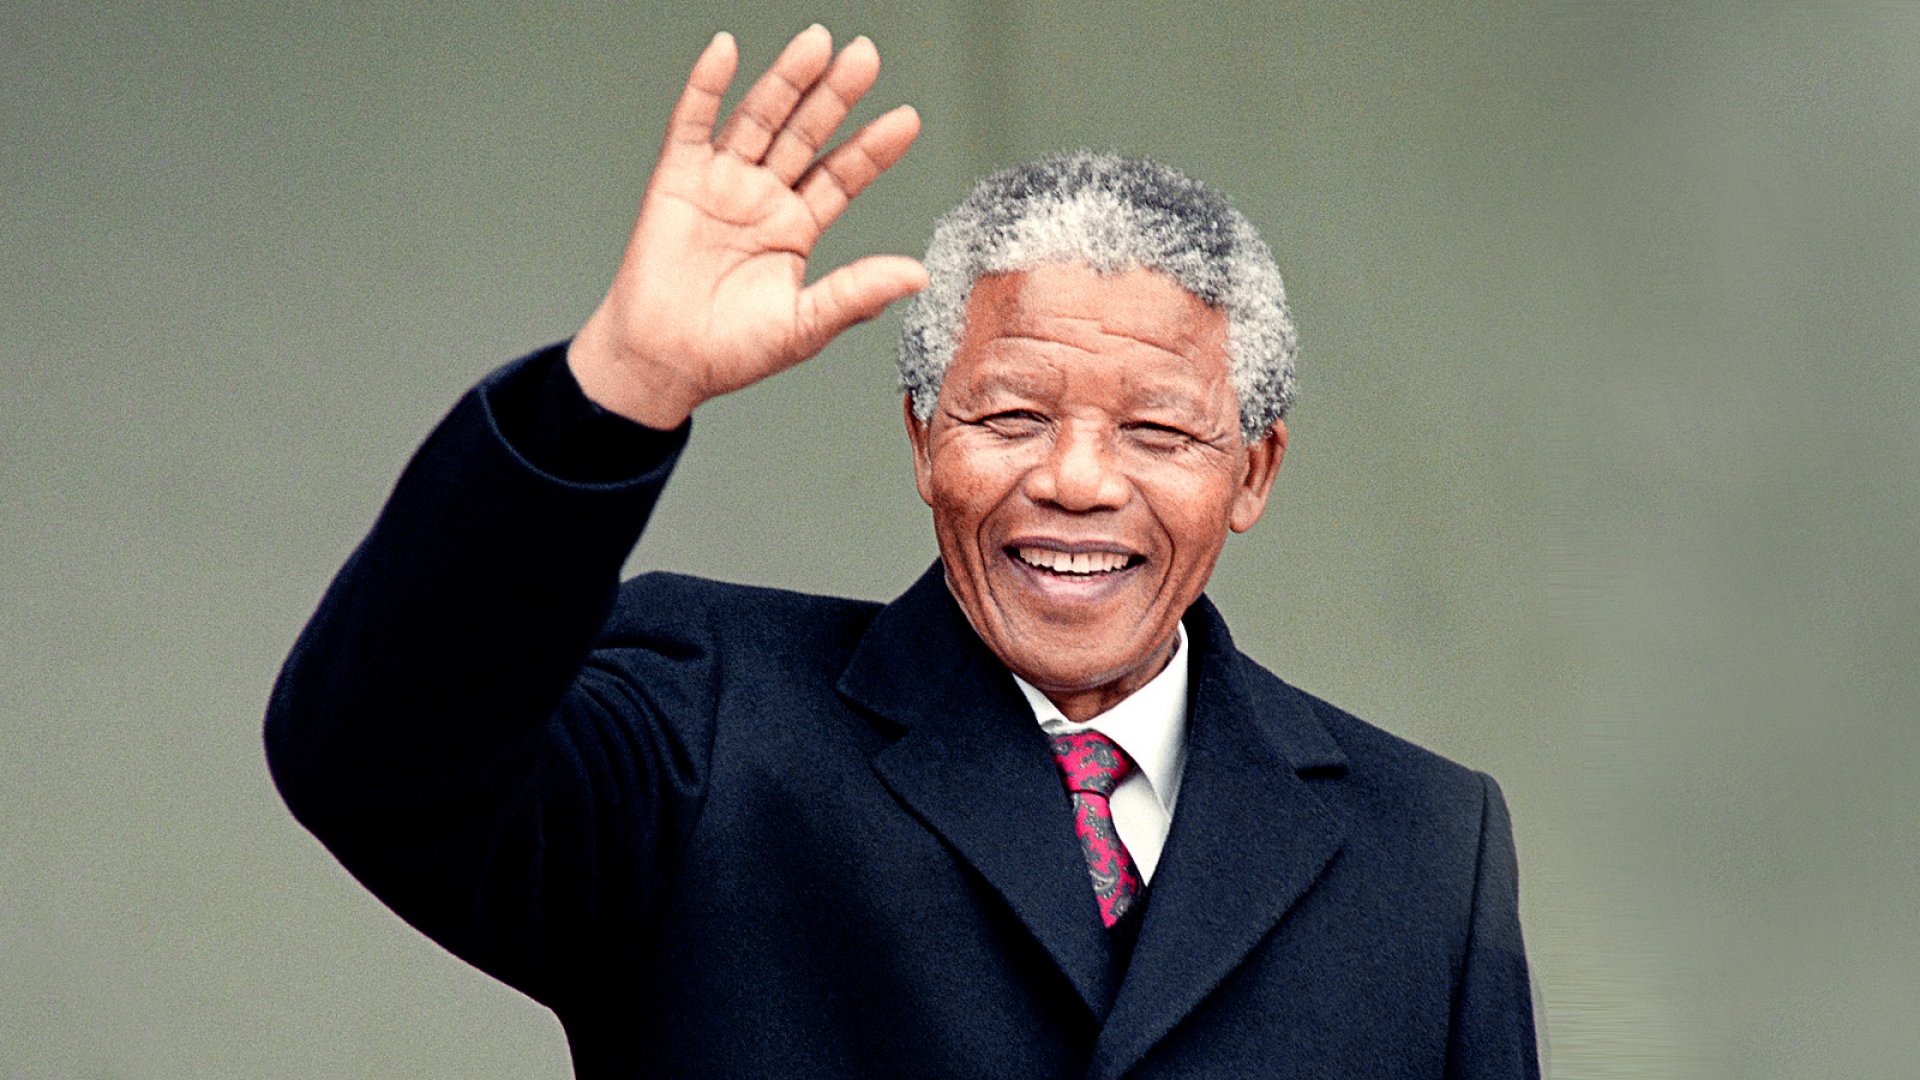 Nelson Mandela: The Great Leader